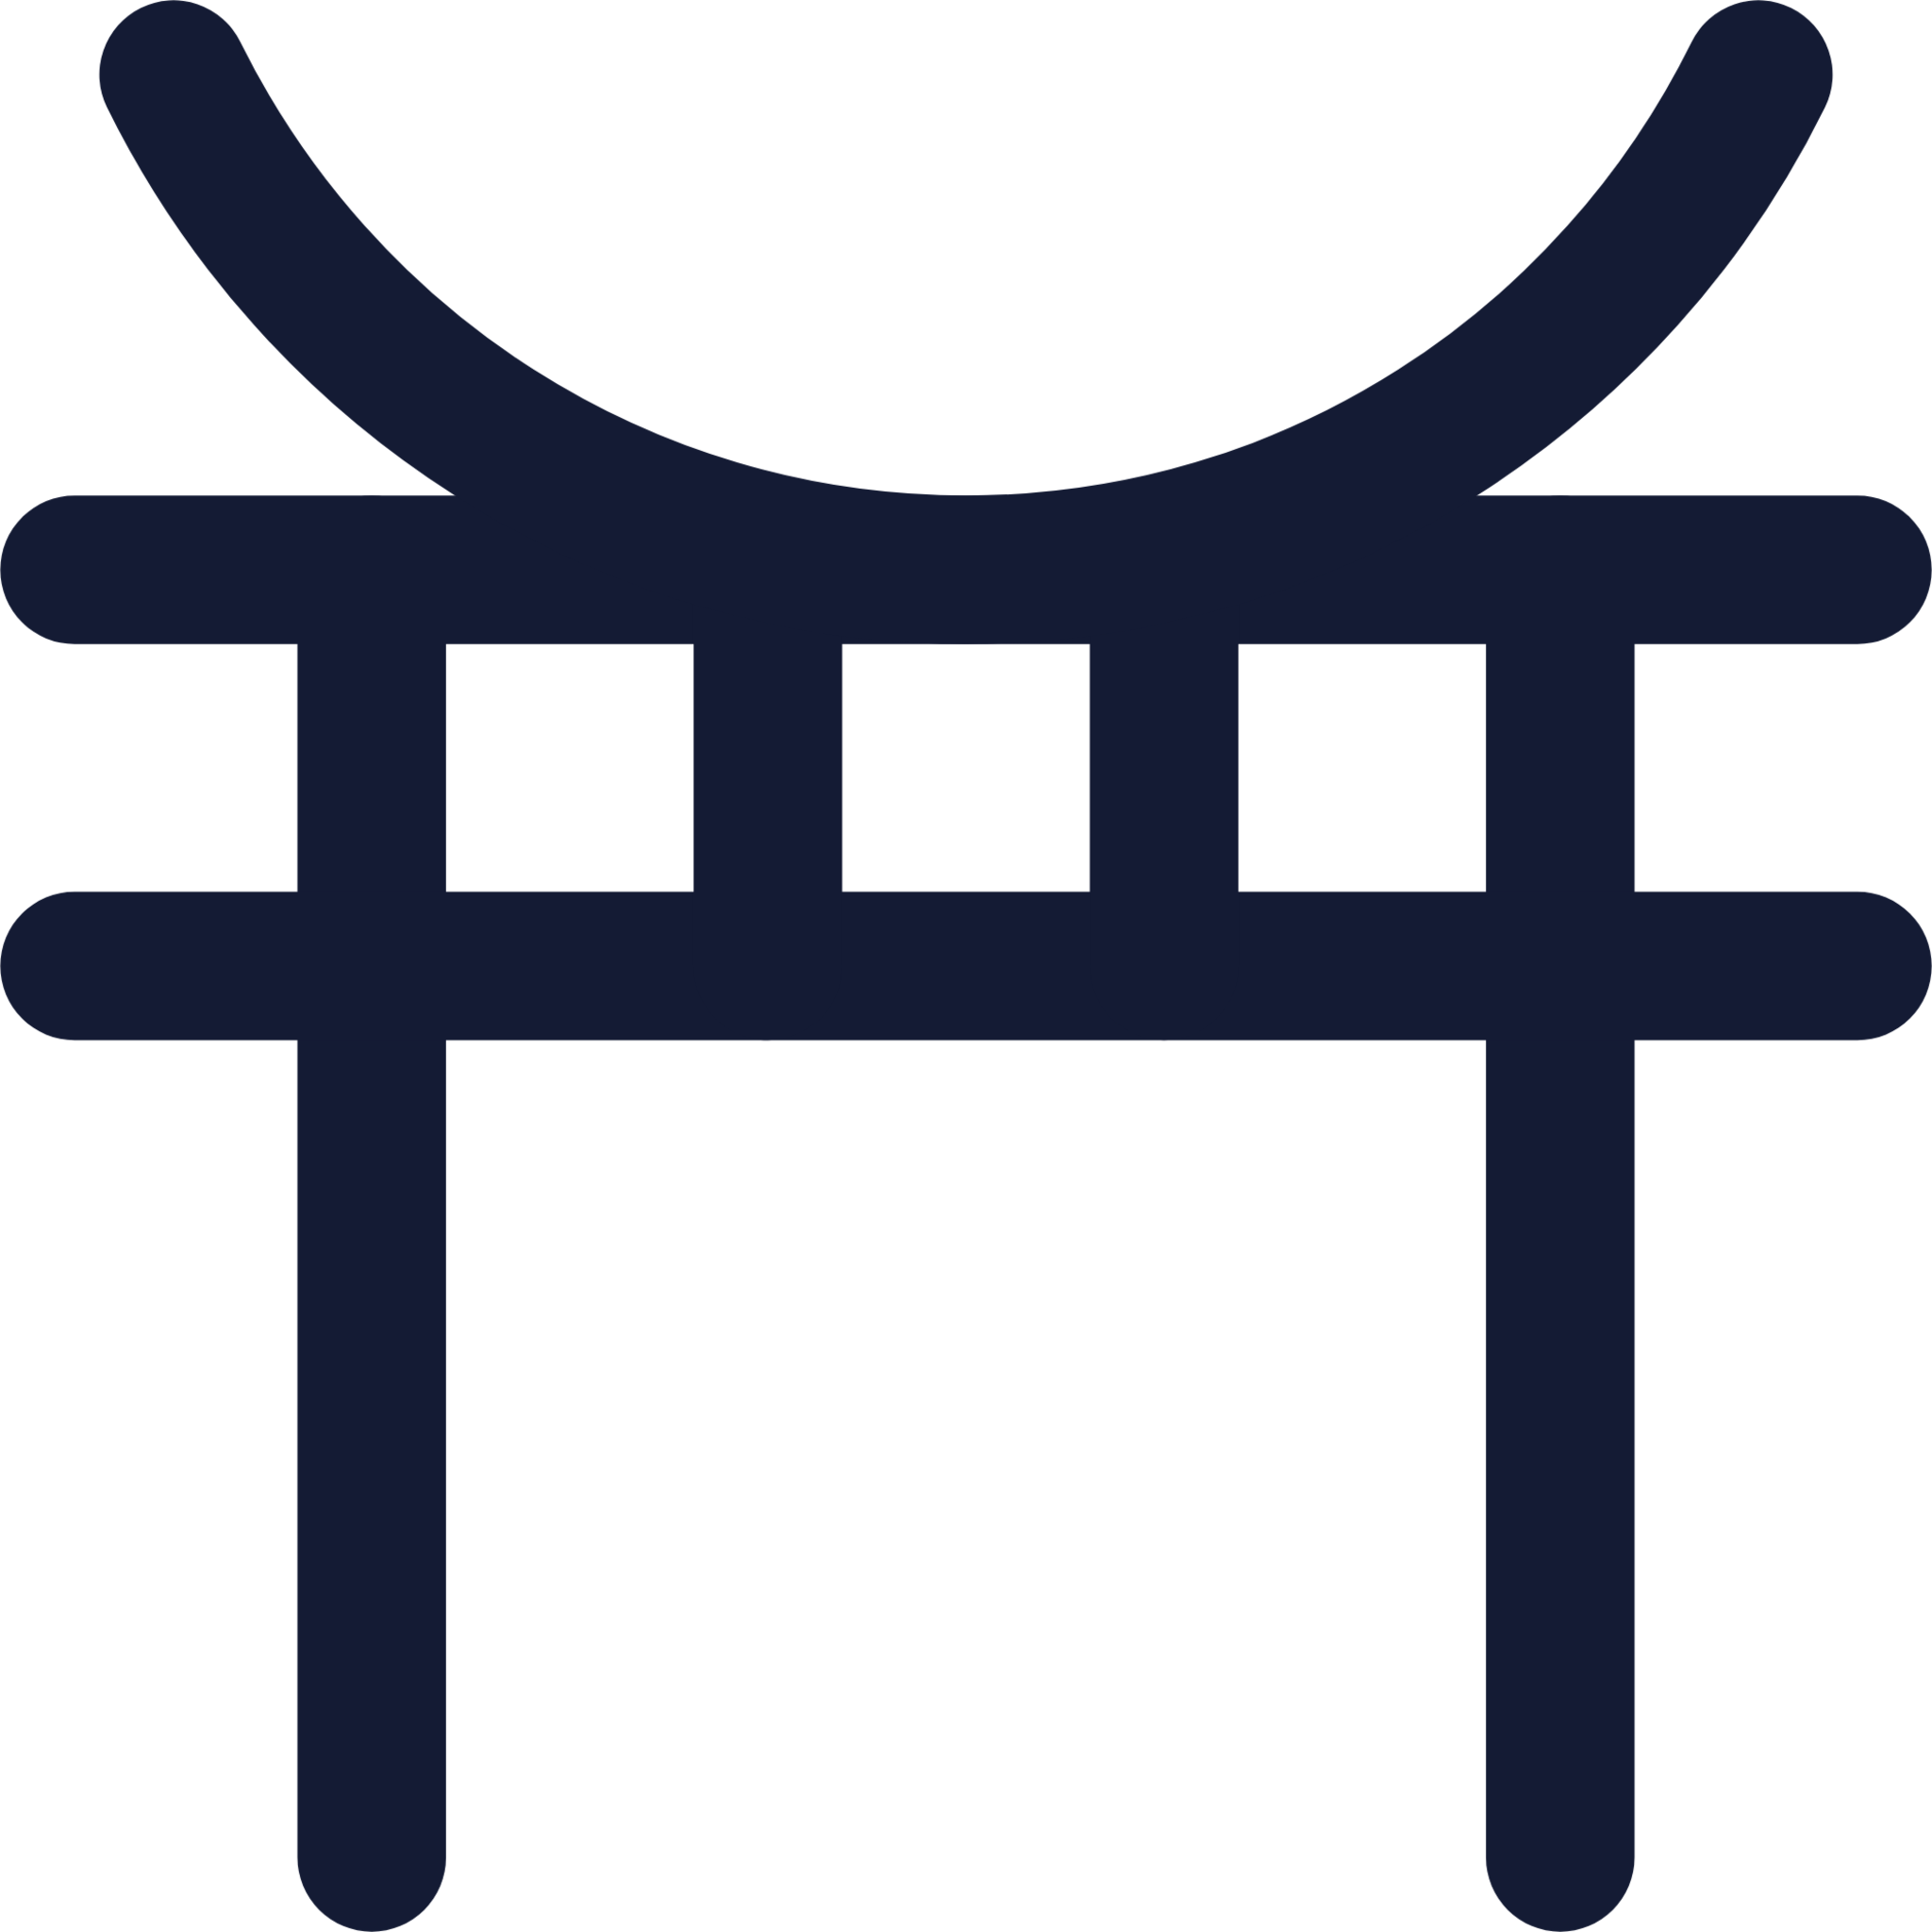 torri gate icon